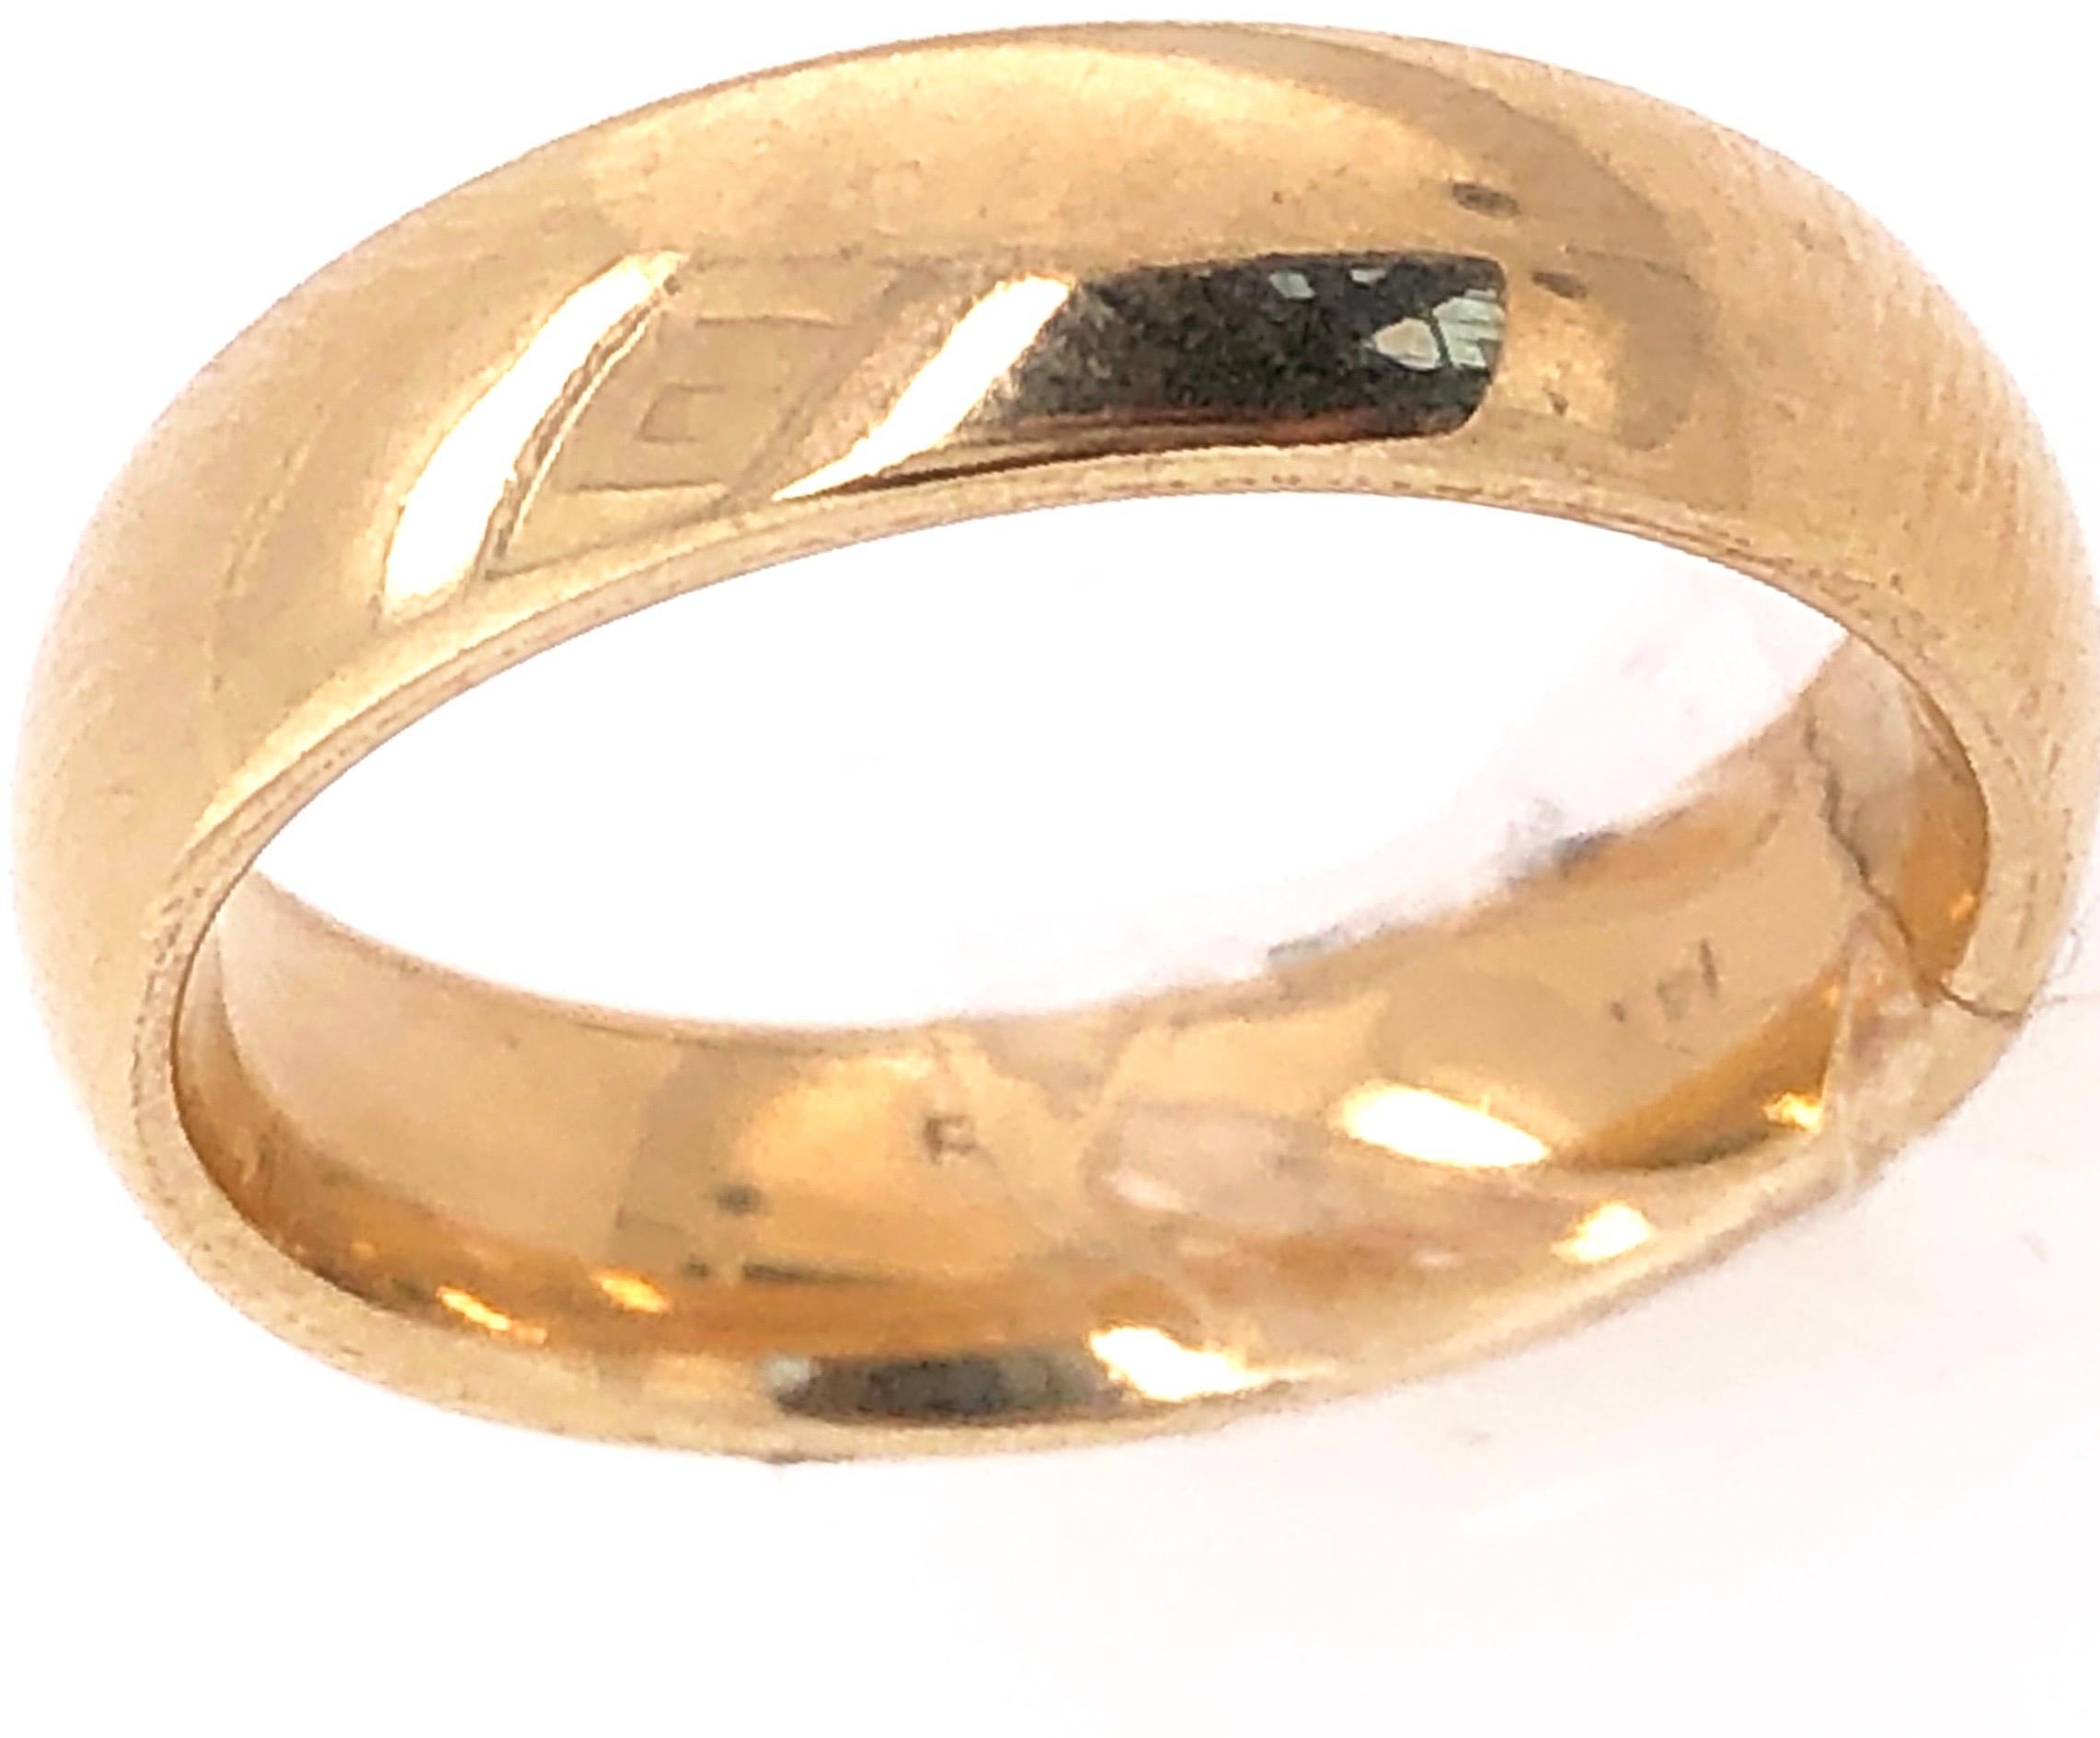 bague de mariage/anneau en or jaune 14 carats.
Taille 6 
5.3 grammes Poids total.